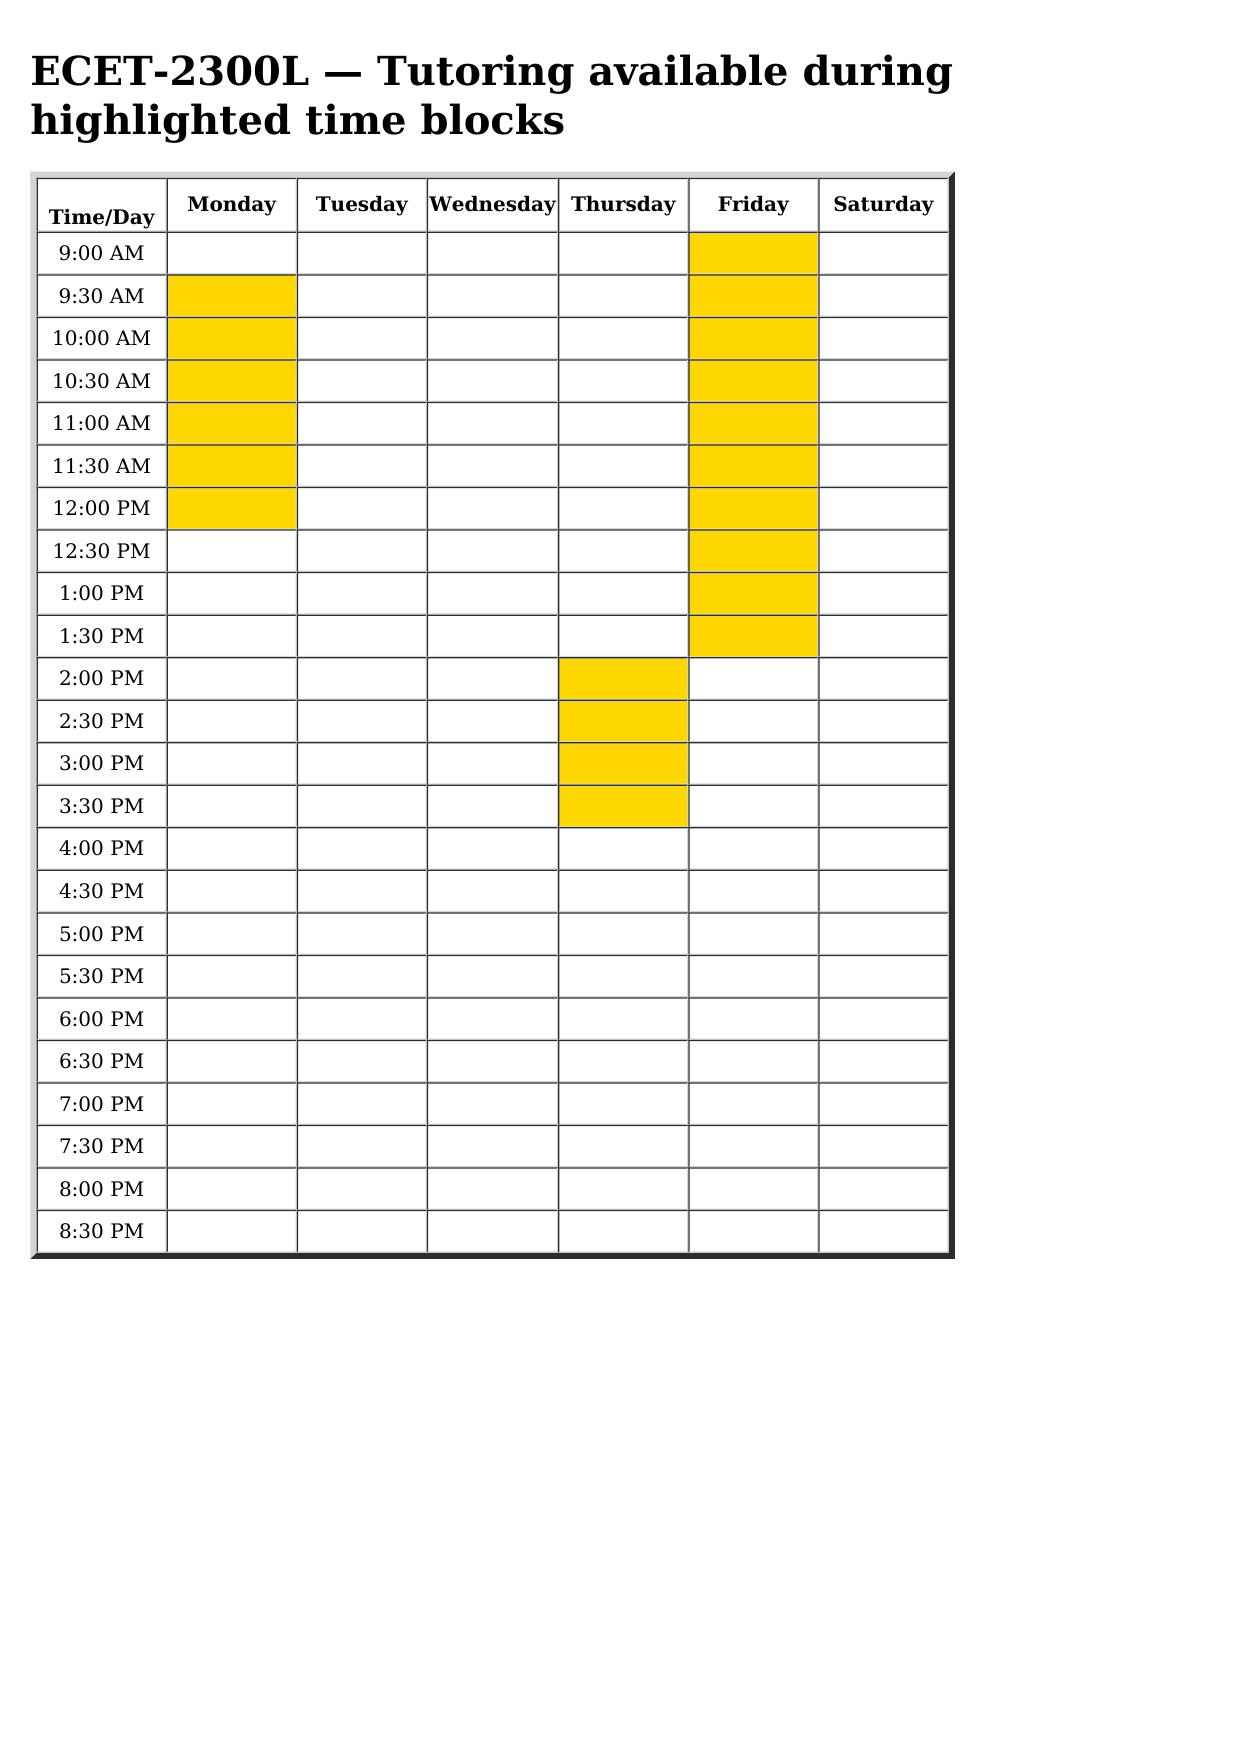 ecet 2300l schedule